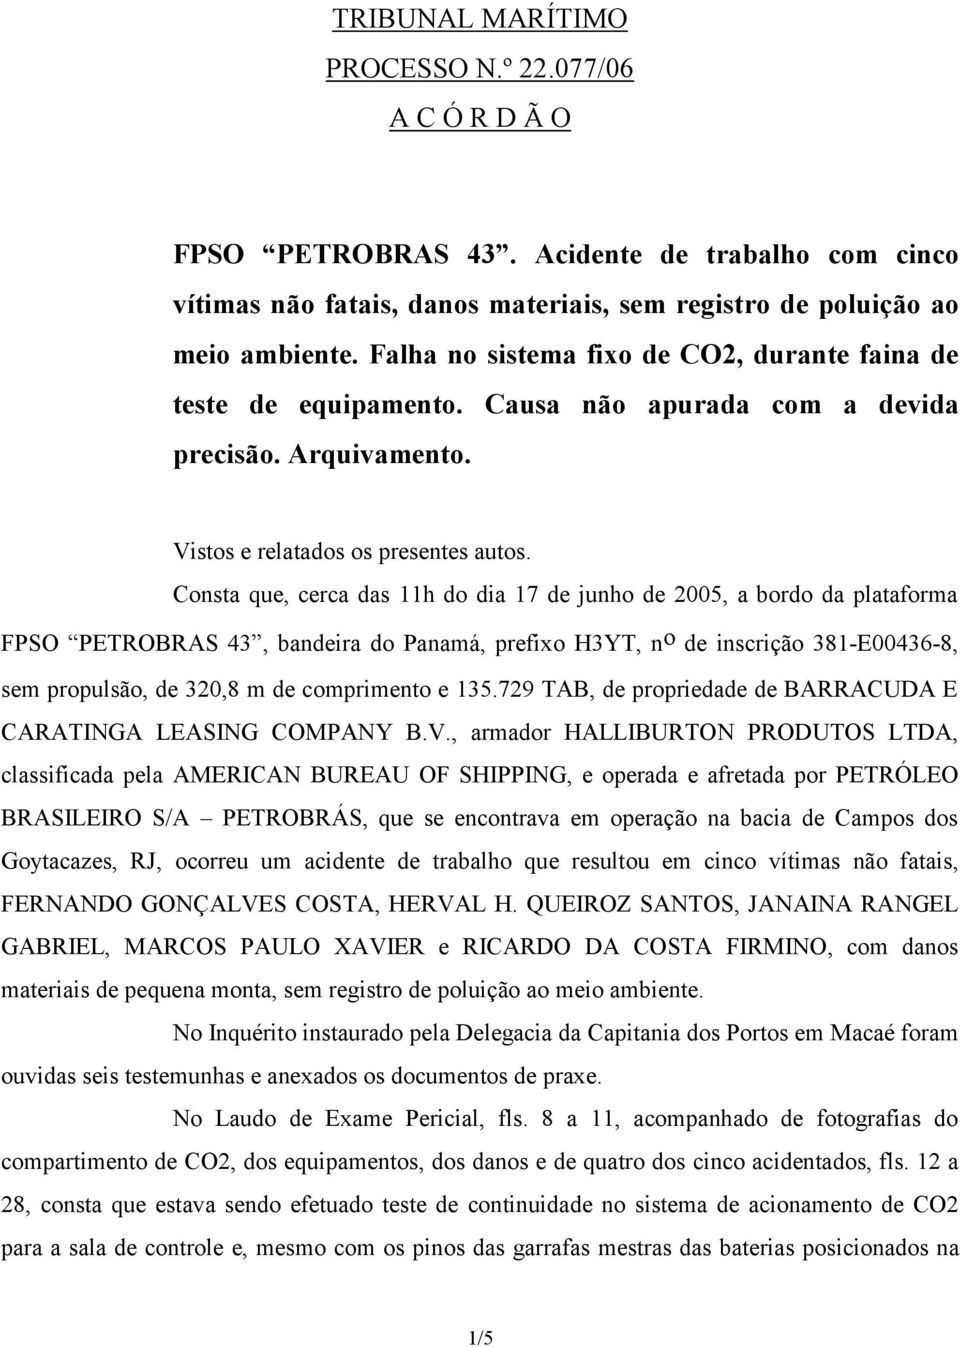 Consta que, cerca das 11h do dia 17 de junho de 2005, a bordo da plataforma FPSO PETROBRAS 43, bandeira do Panamá, prefixo H3YT, n o de inscrição 381-E00436-8, sem propulsão, de 320,8 m de